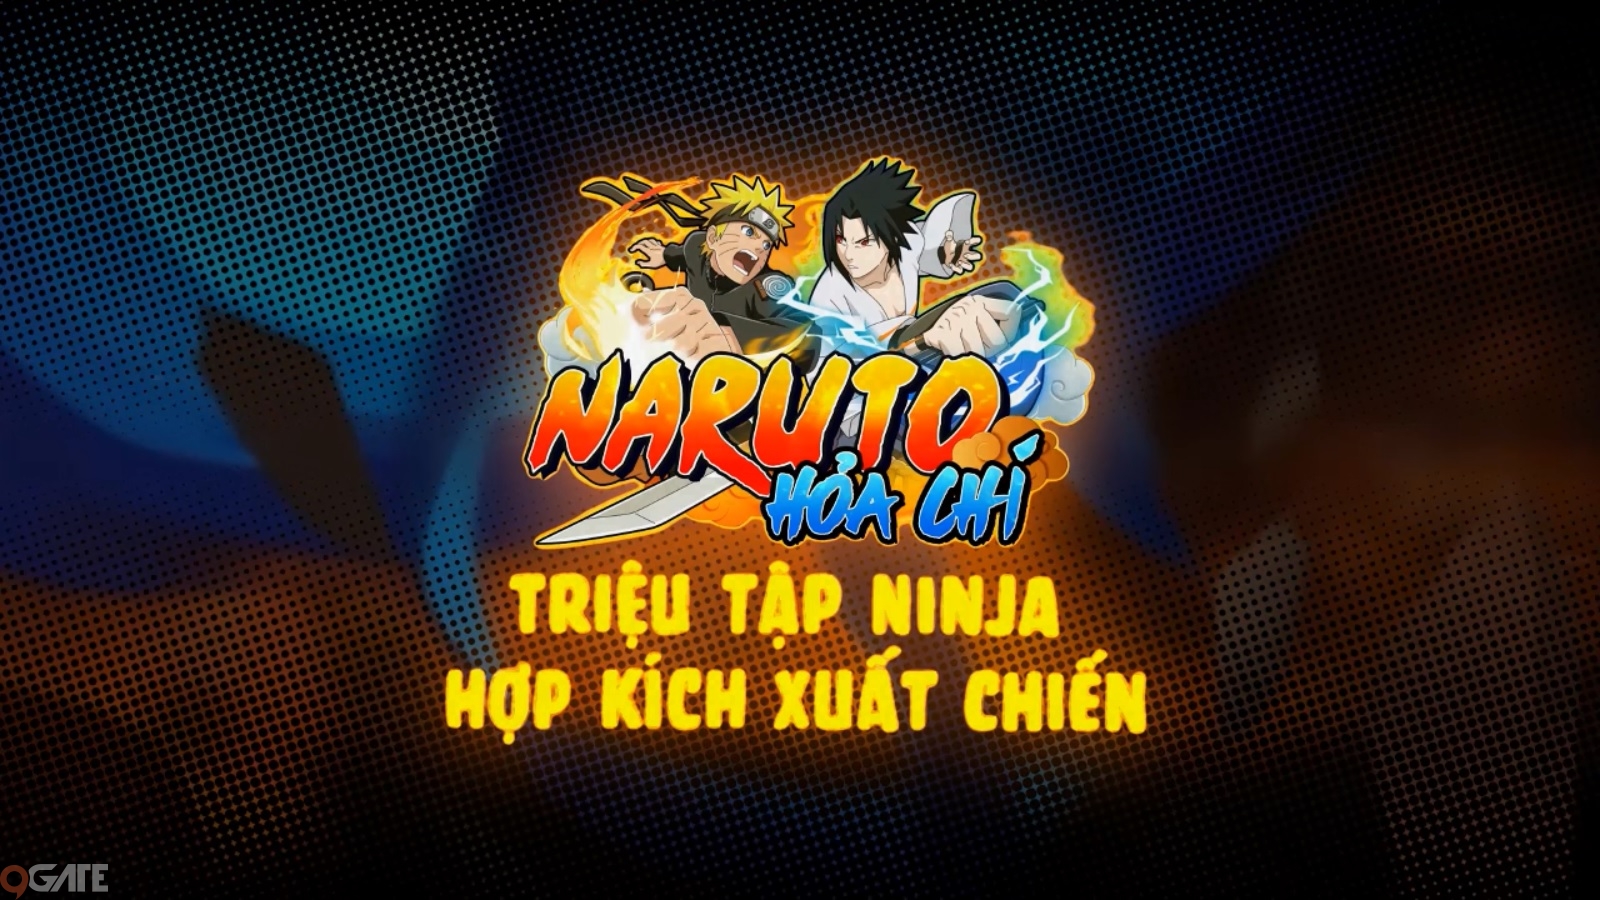 Naruto Hỏa Chí chính thức cập bến thị trường Việt Nam